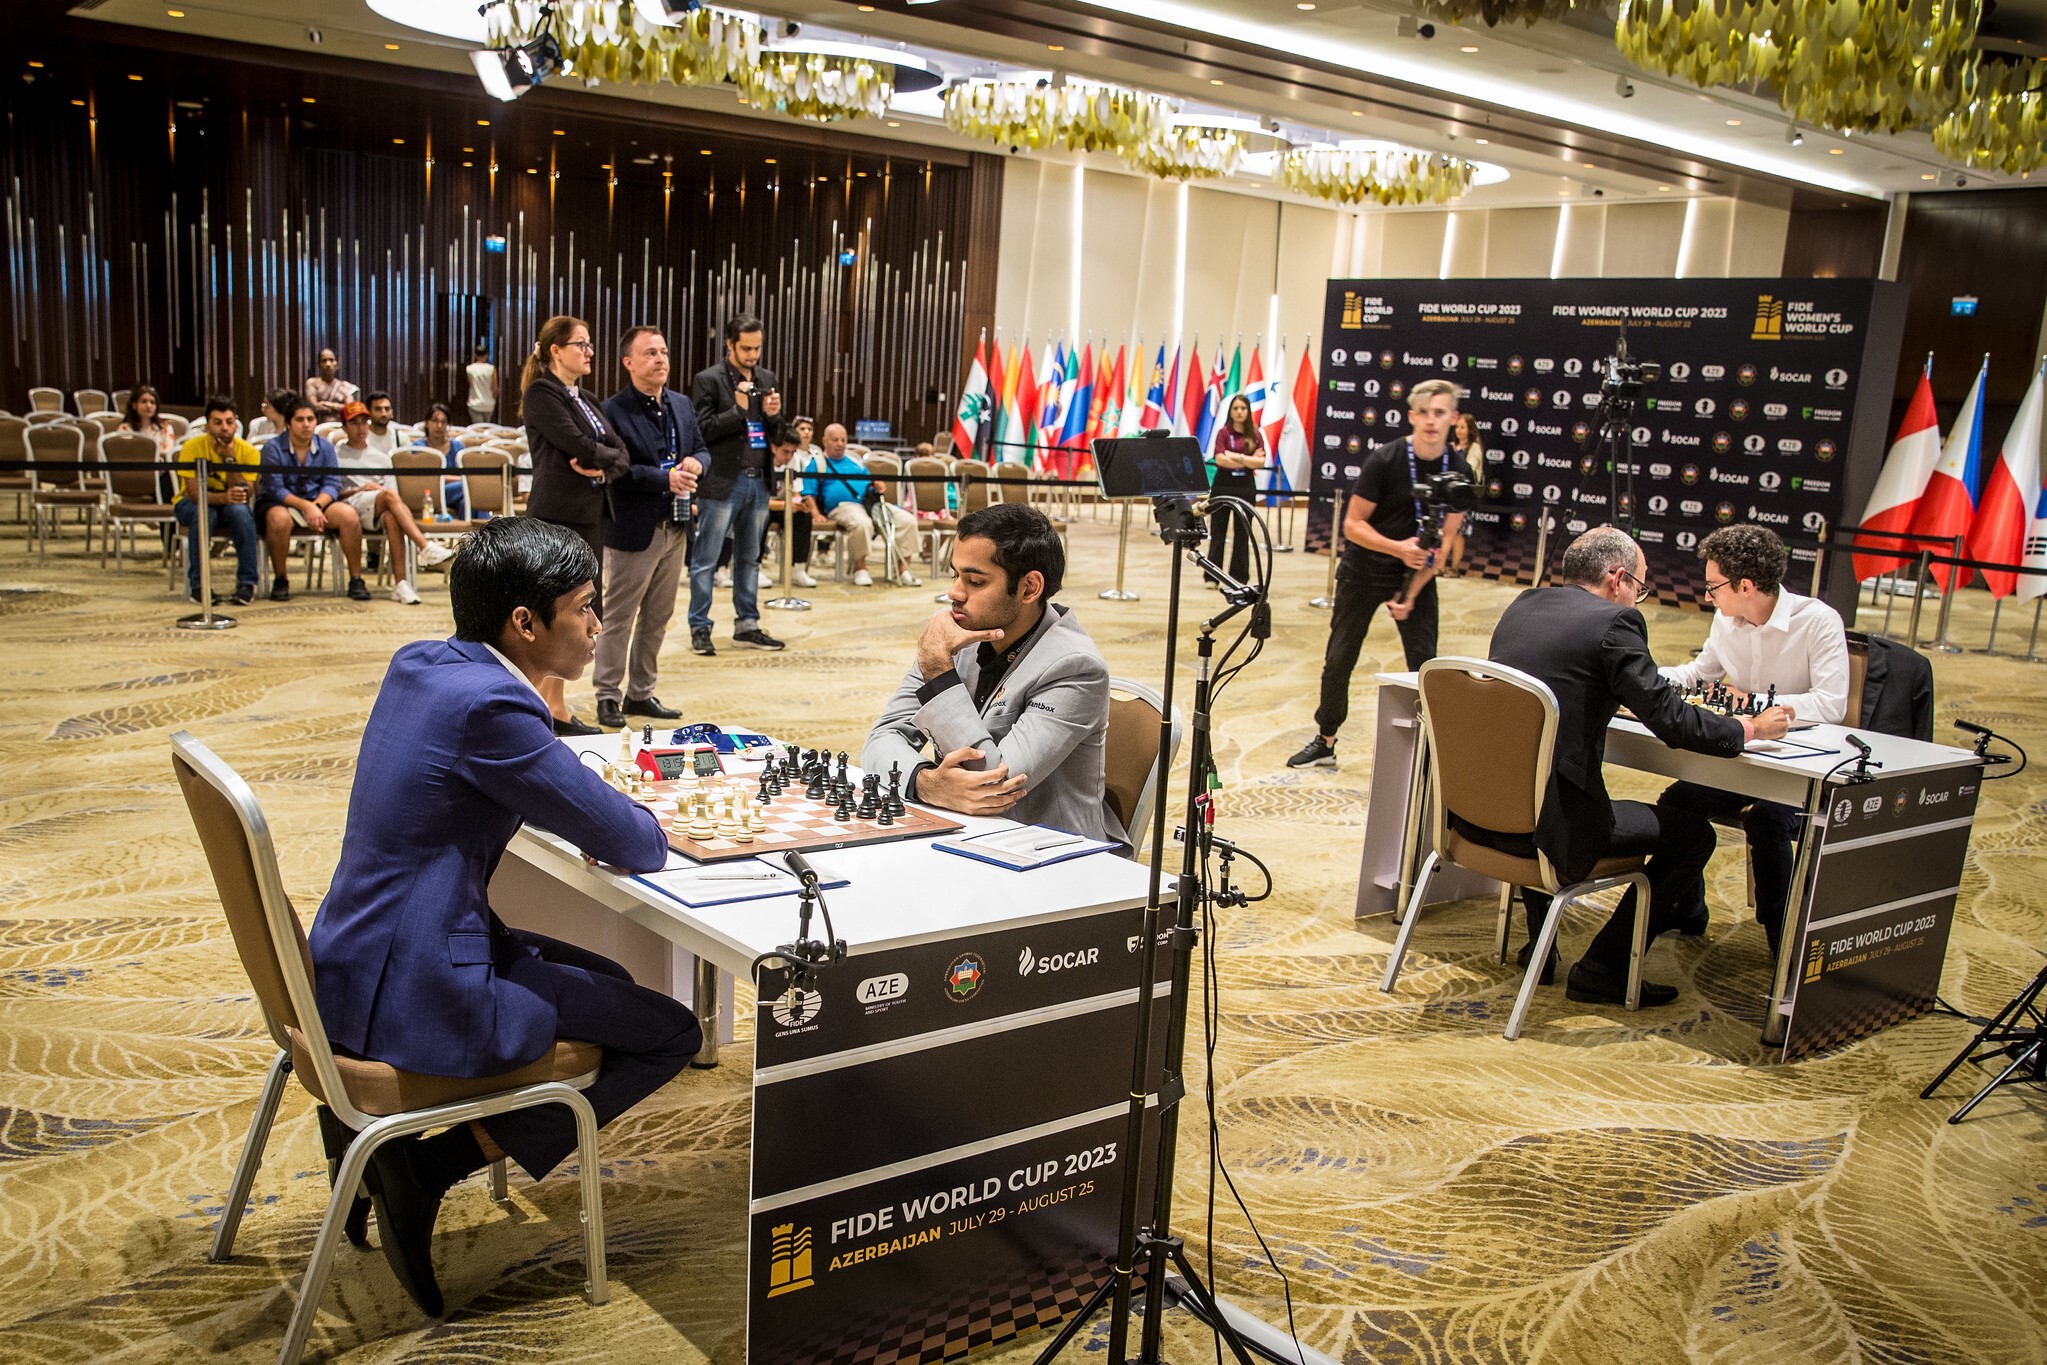 Campeonato Mundial da FIDE 2021